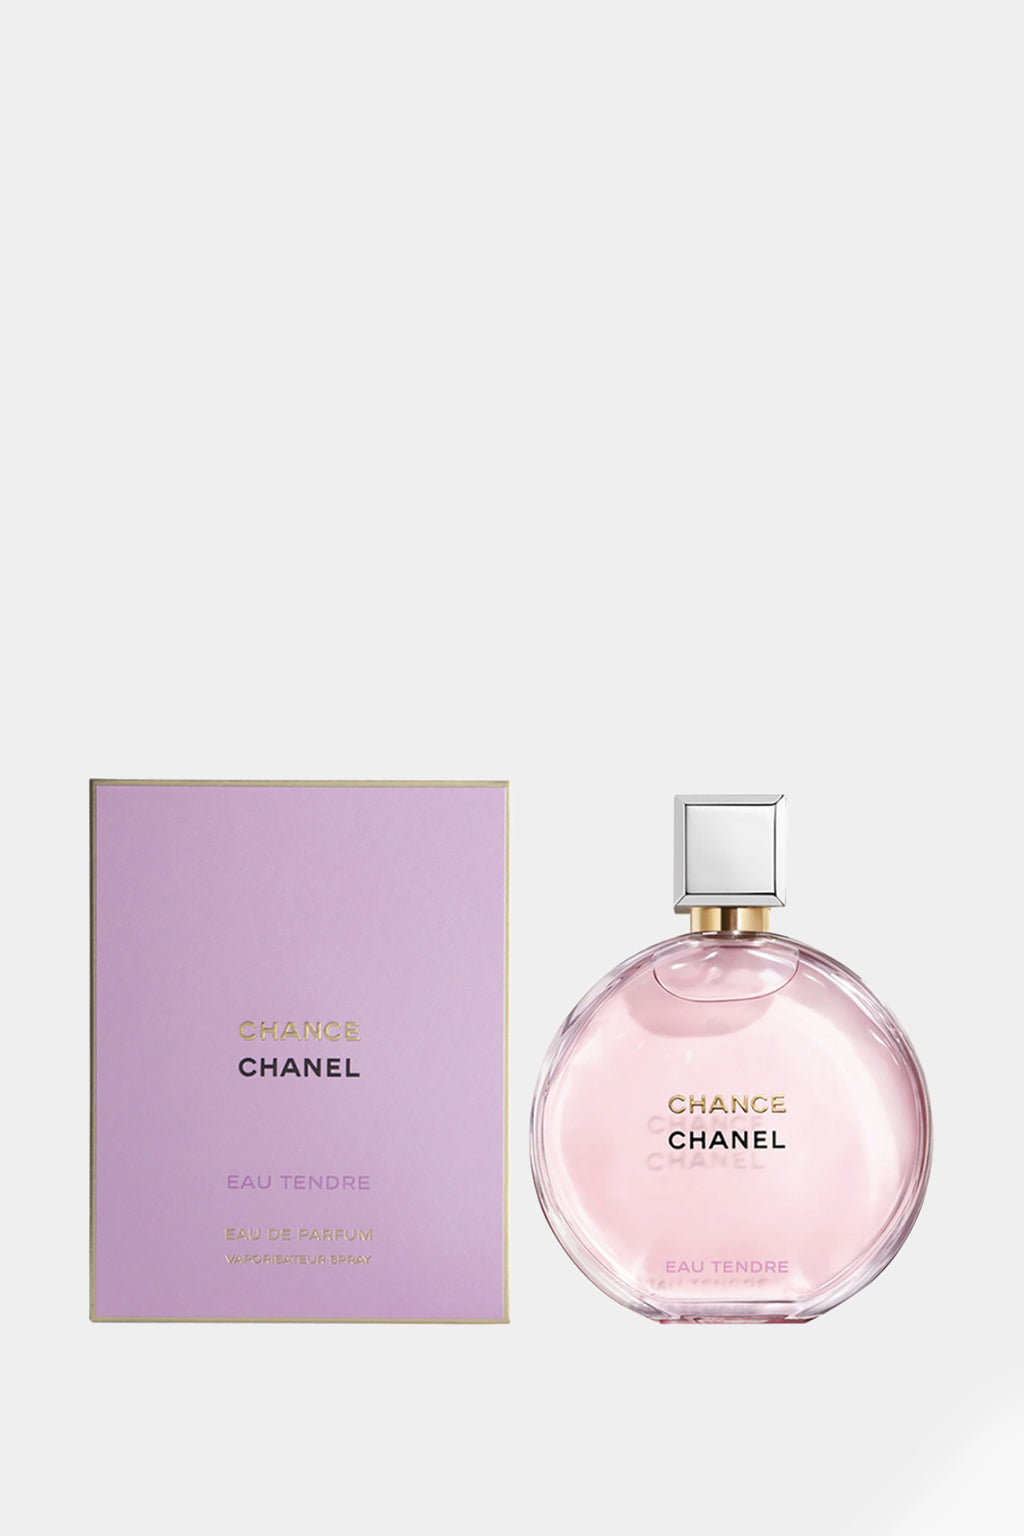 Chanel - Chance Eau Tendre Eau de Toilette